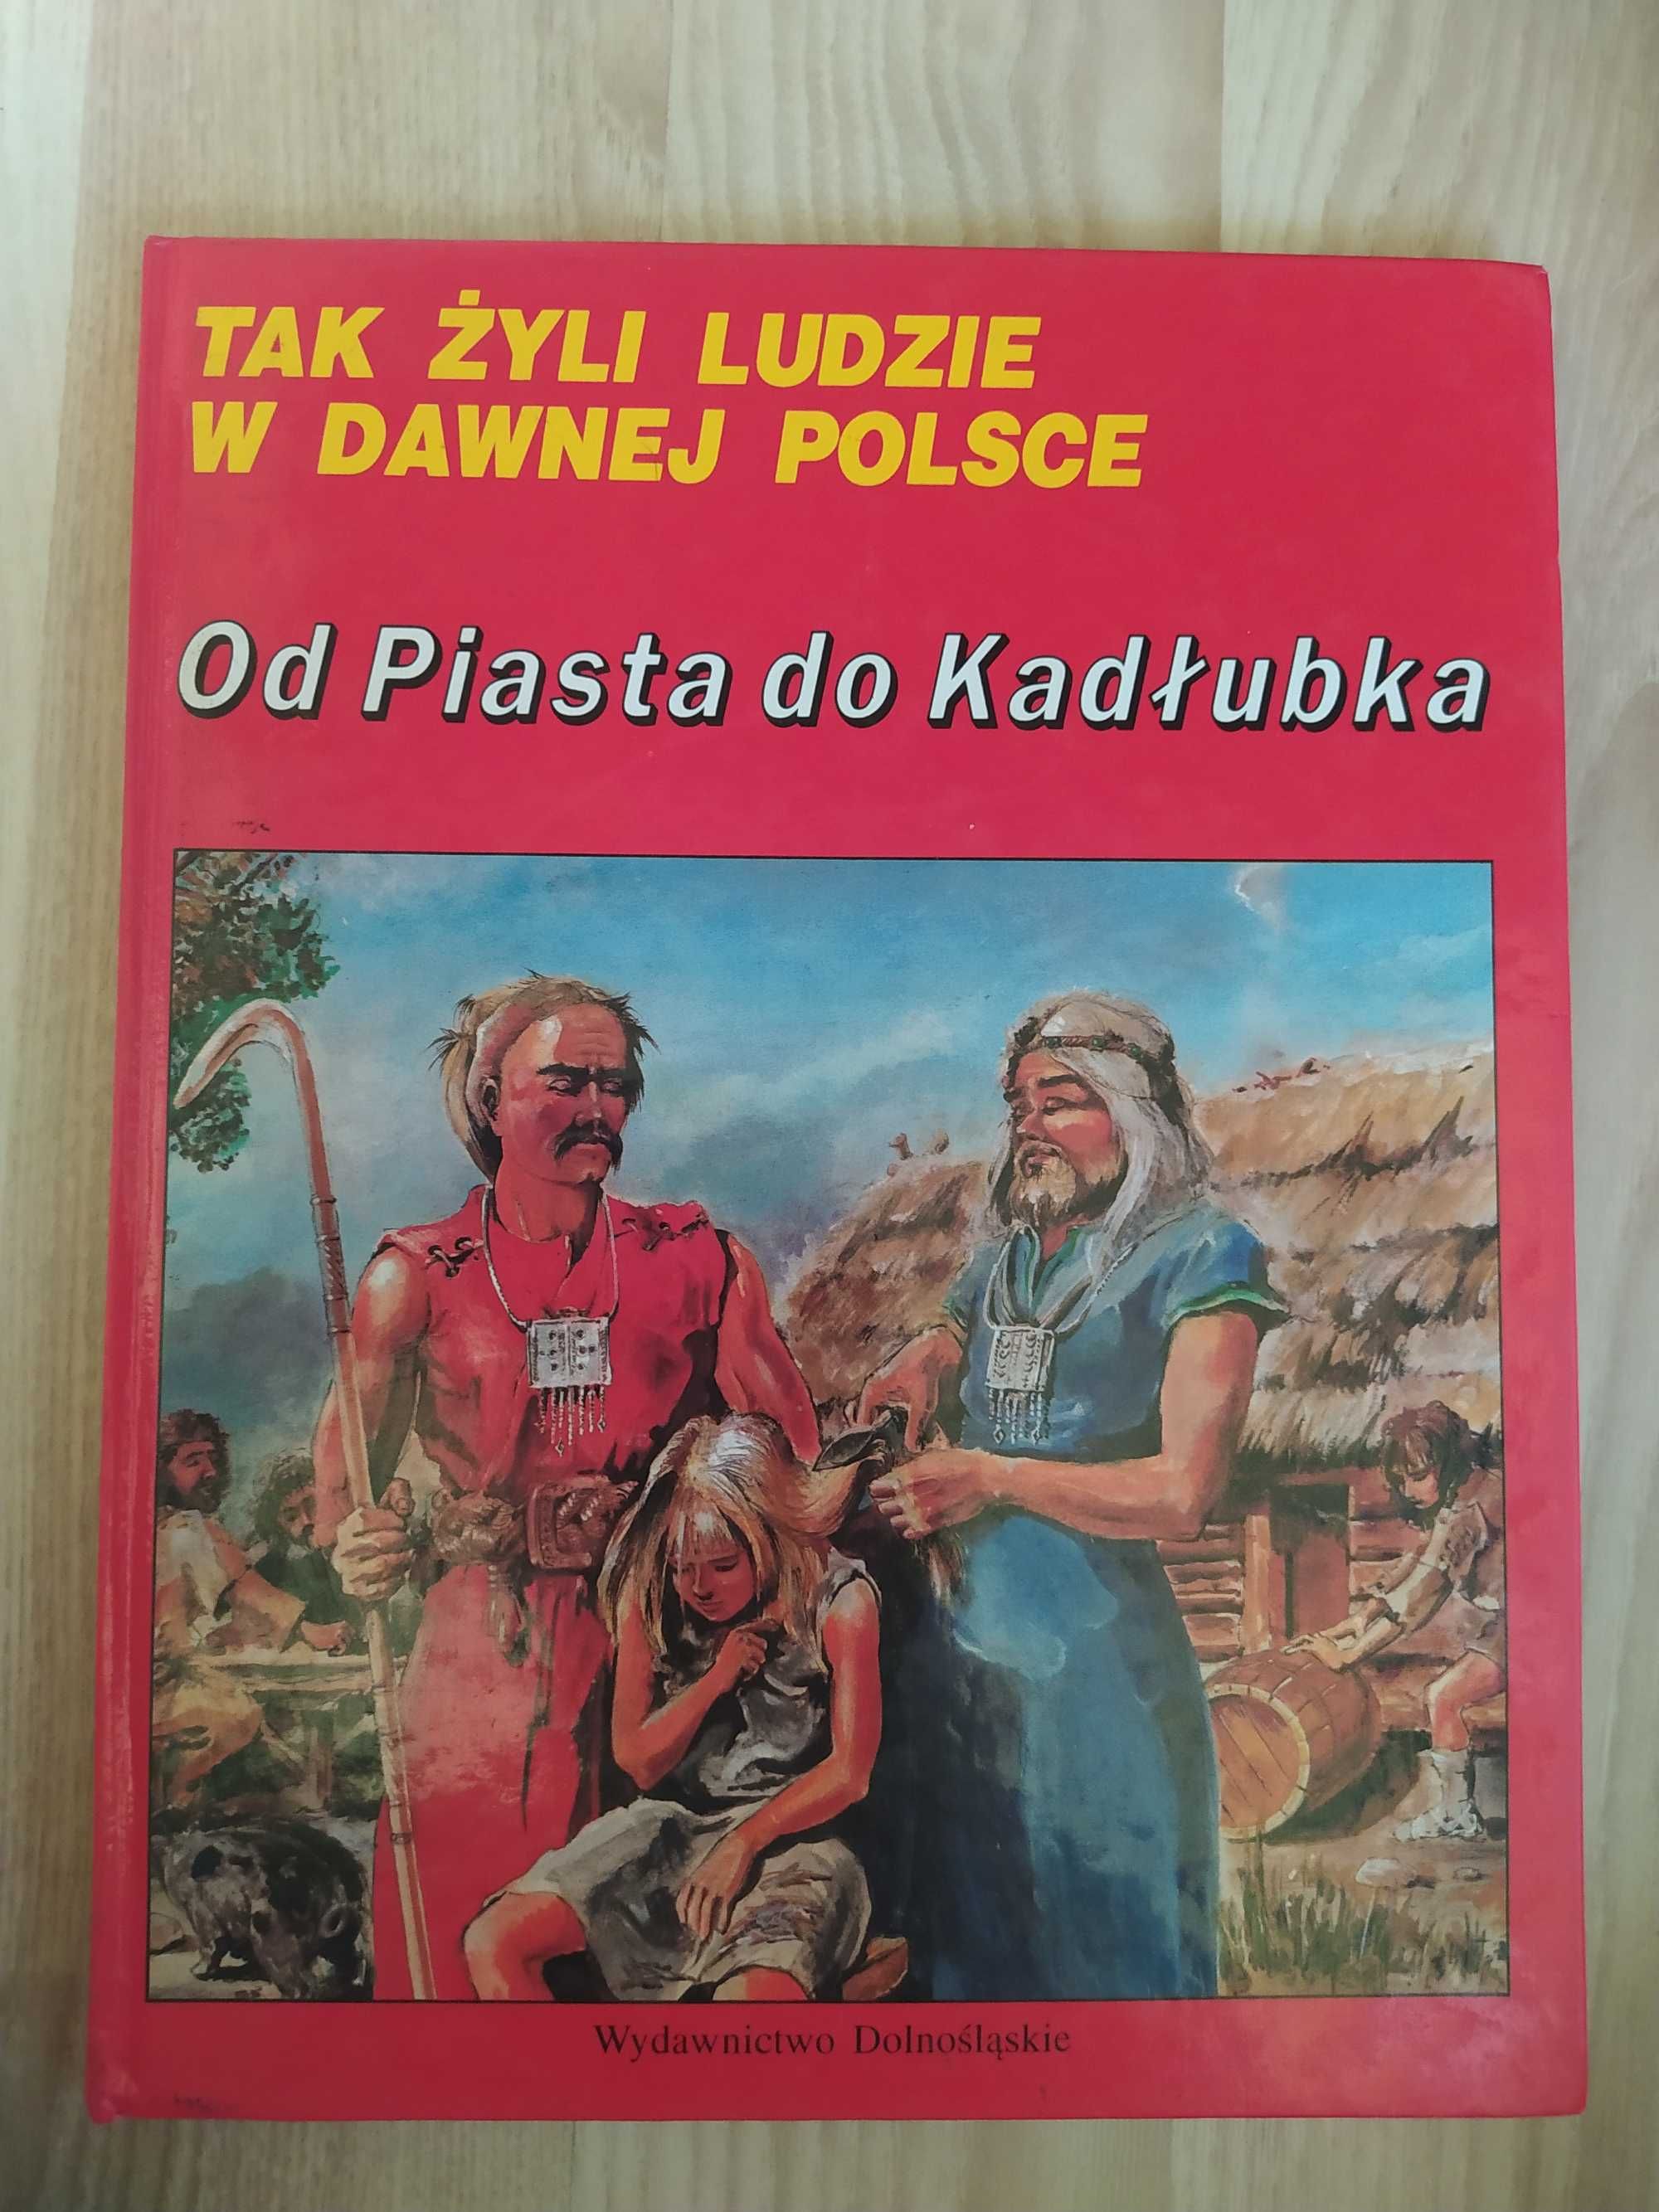 Od Piasta do Kadłubka - Tak żyli ludzie w dawnej Polsce